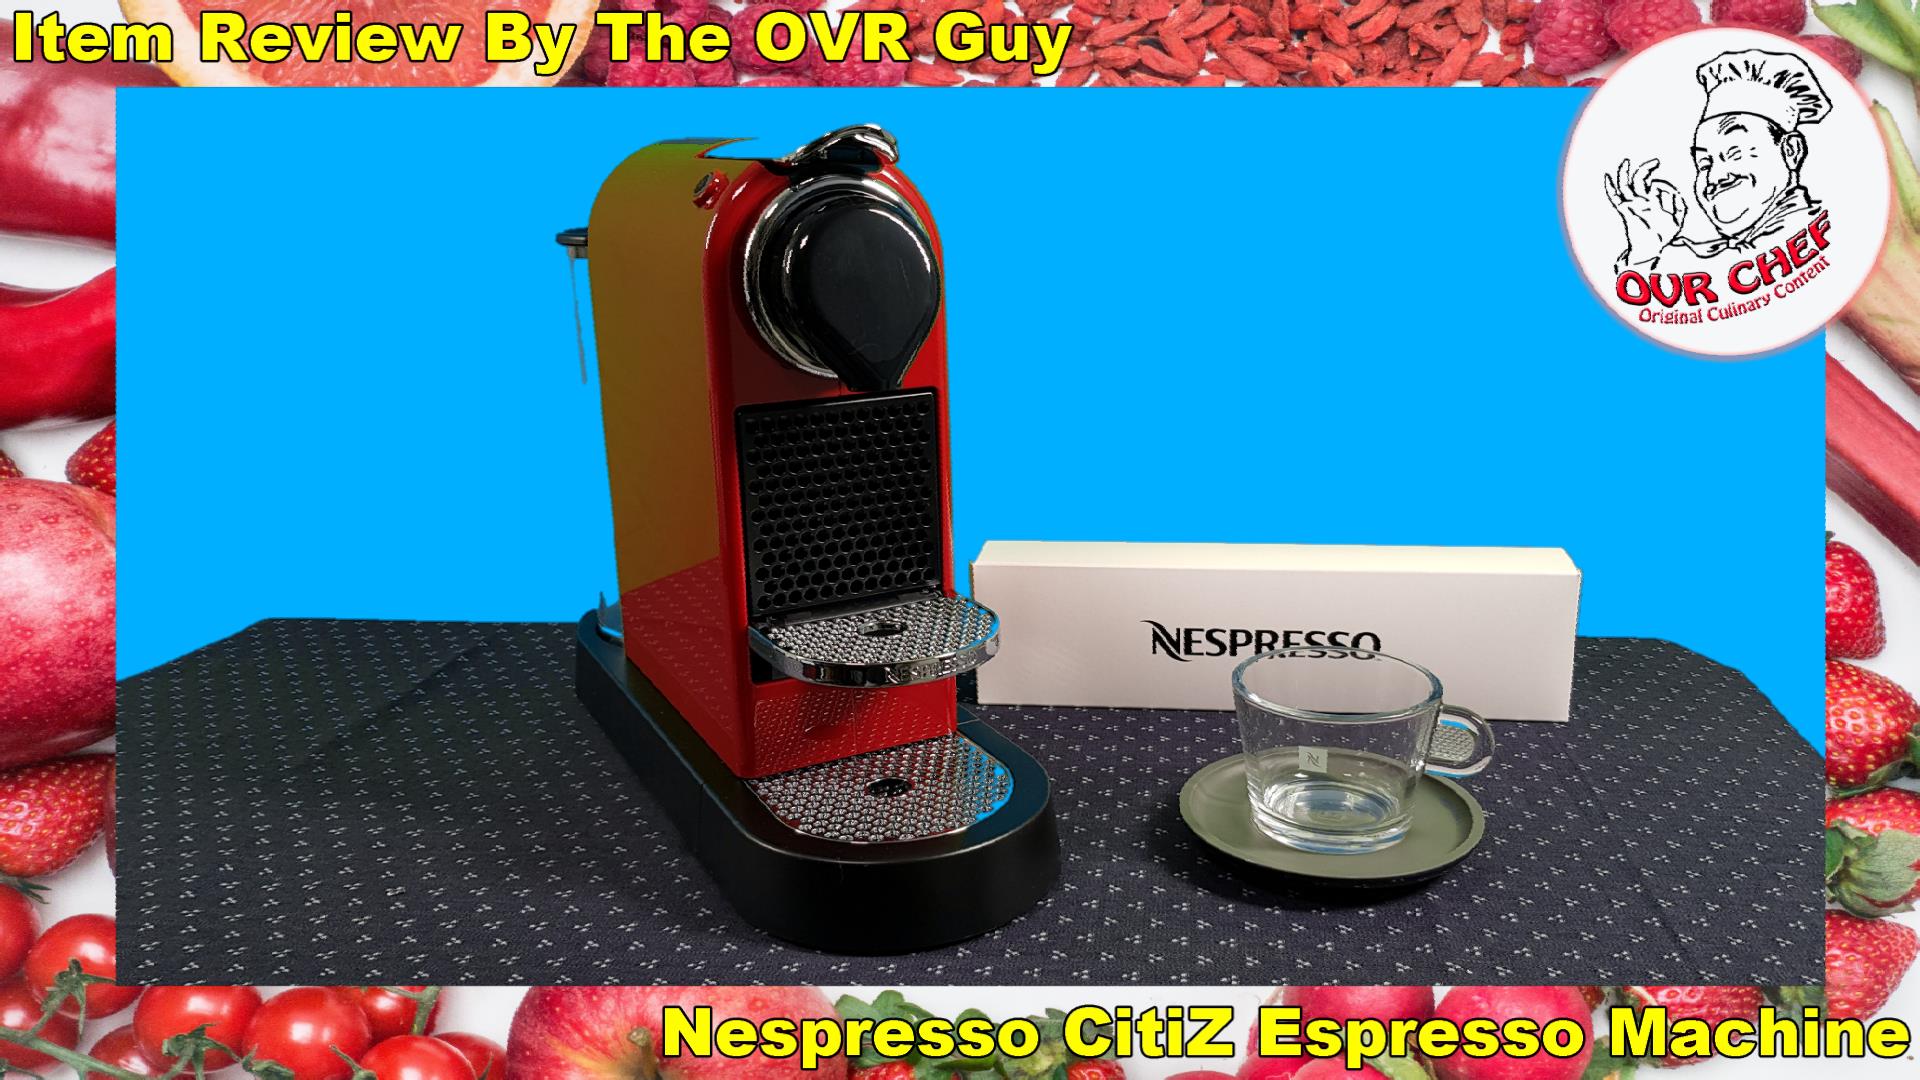 Nespresso CitiZ Espresso Machine (Review) - Original Video Reviews